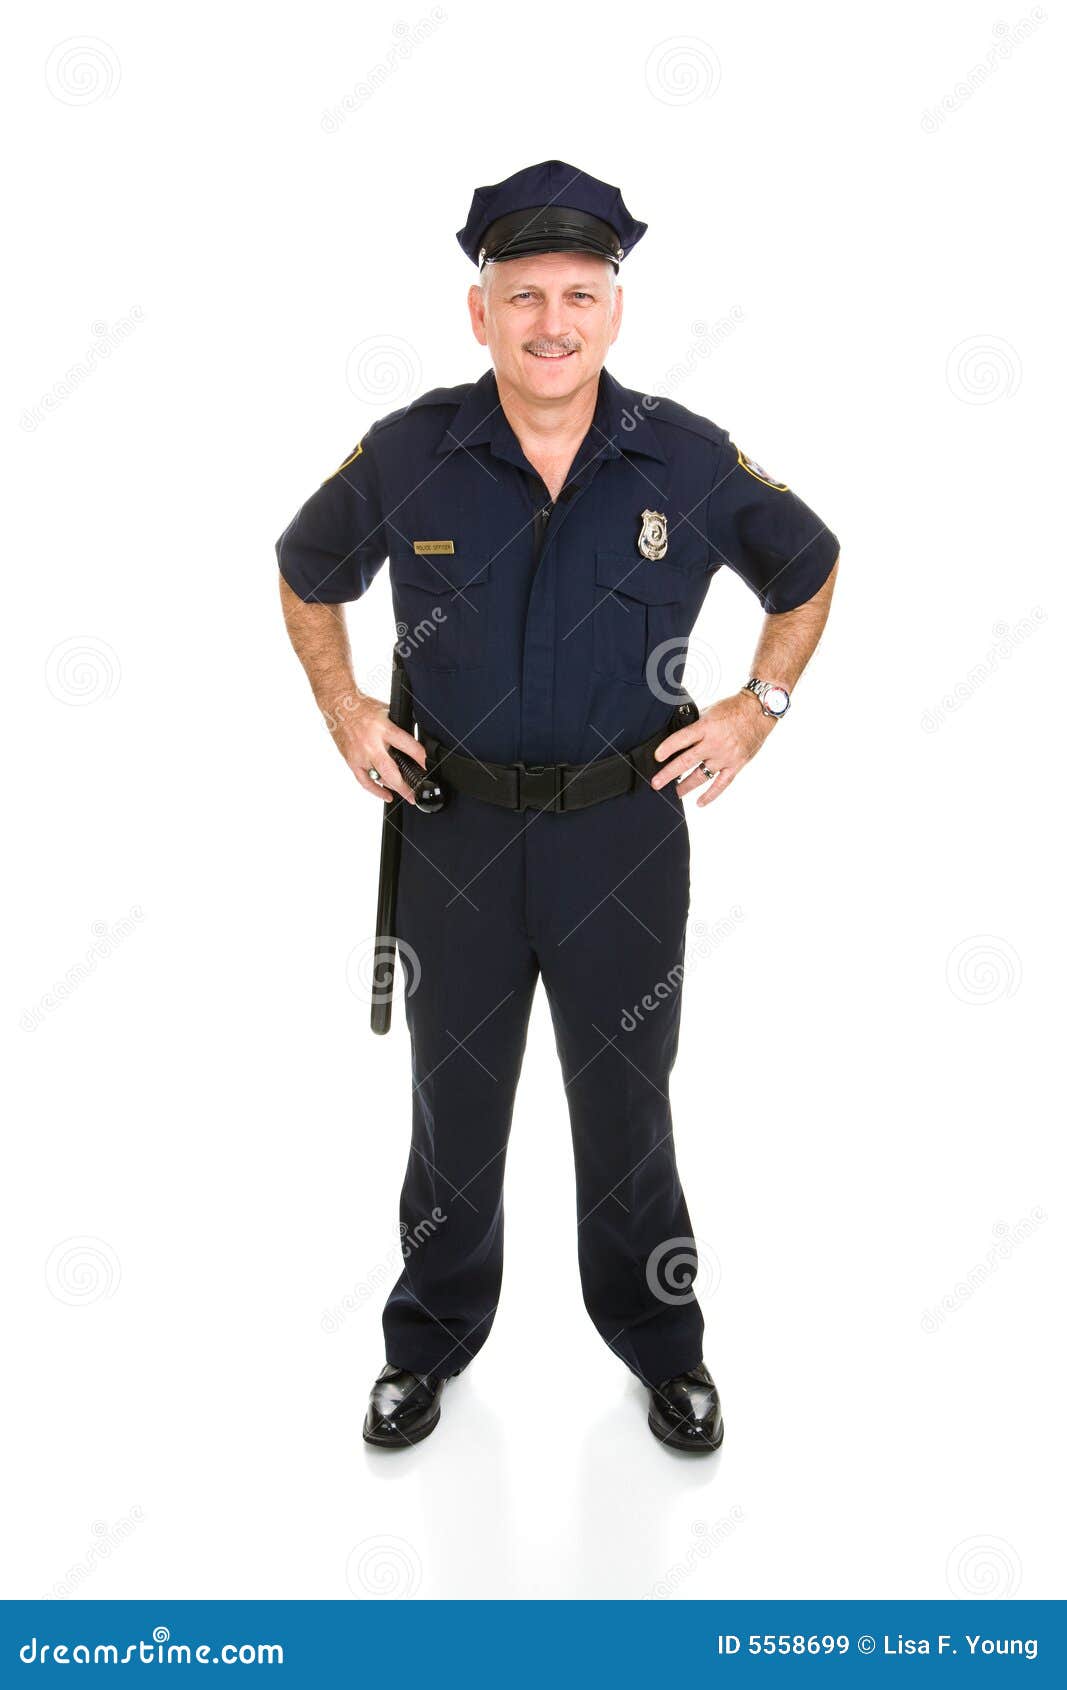 police officer full body front